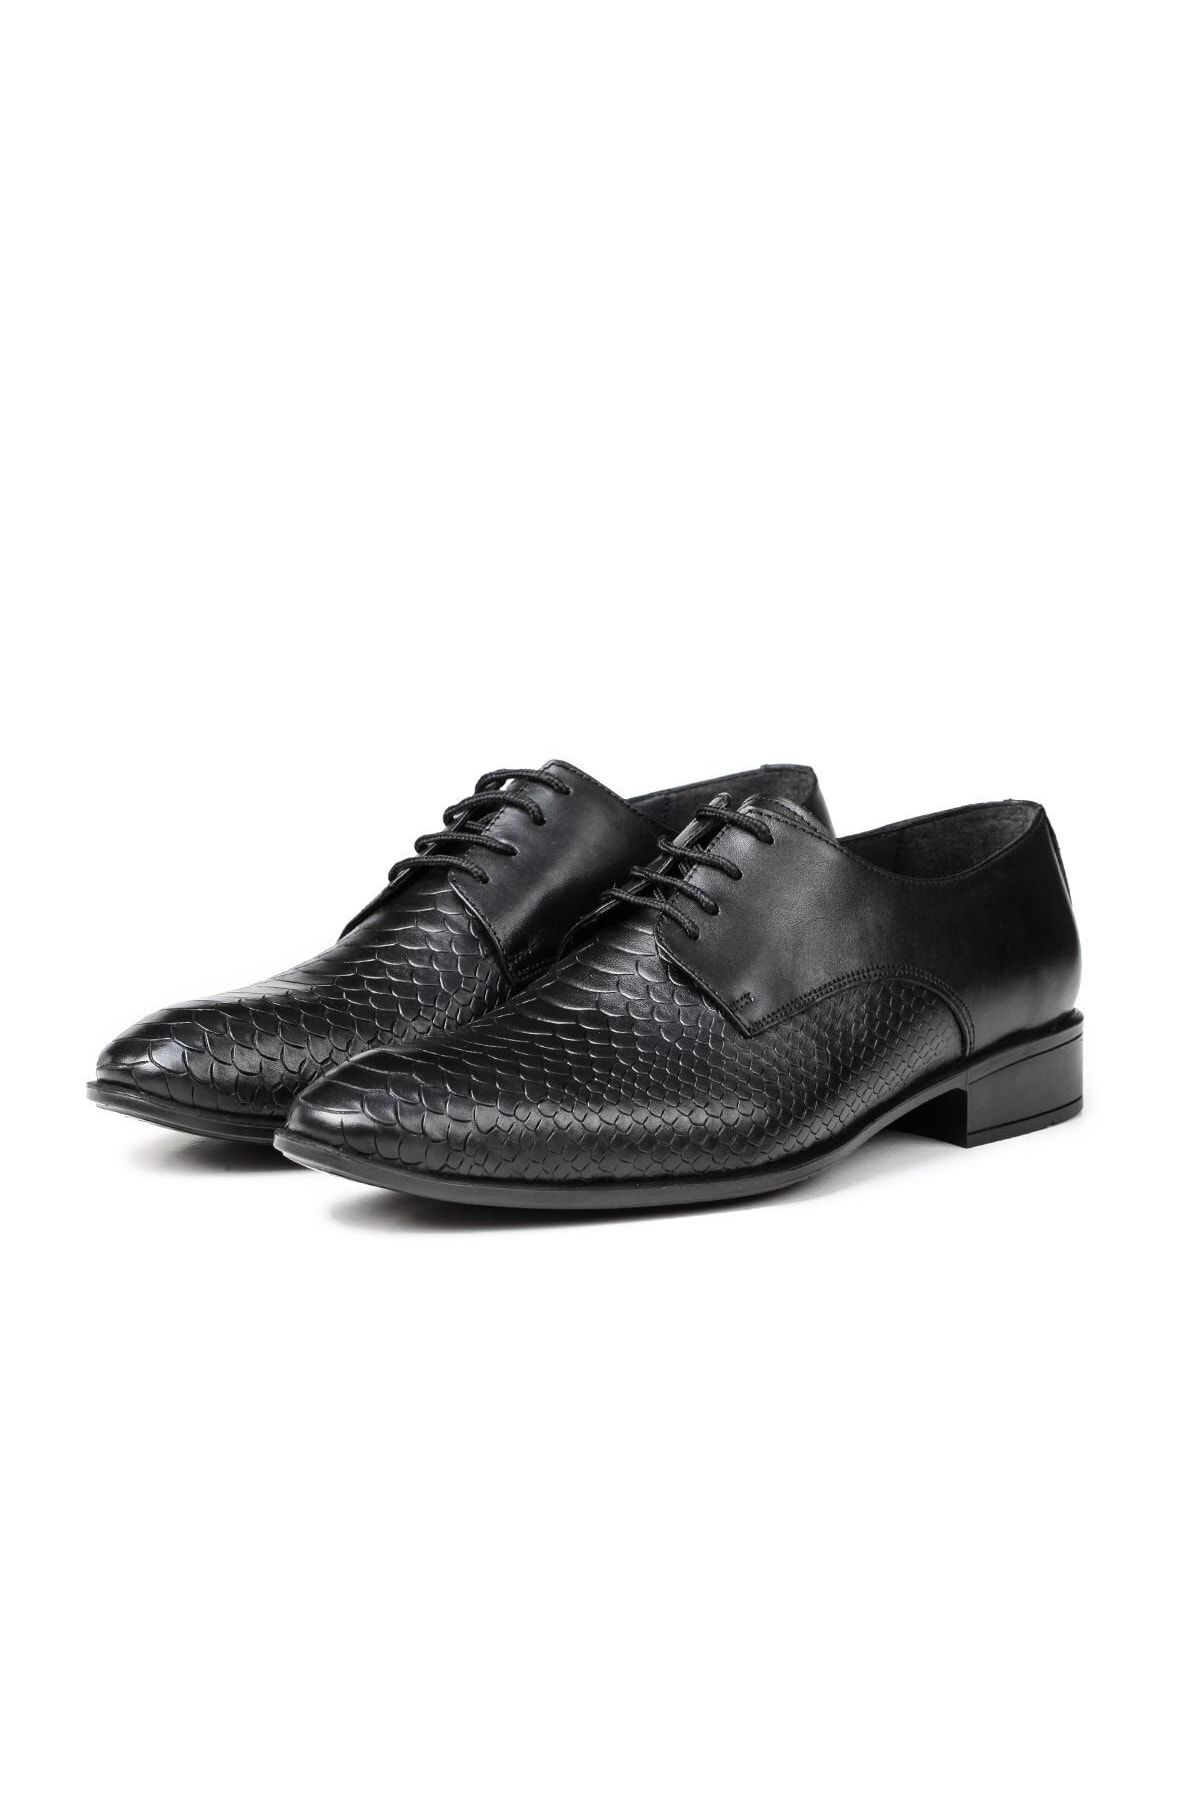 Ducavelli Croco Hakiki Deri Erkek Klasik Ayakkabı, Derby Klasik Ayakkabı, Bağcıklı Klasik Ayakkabı